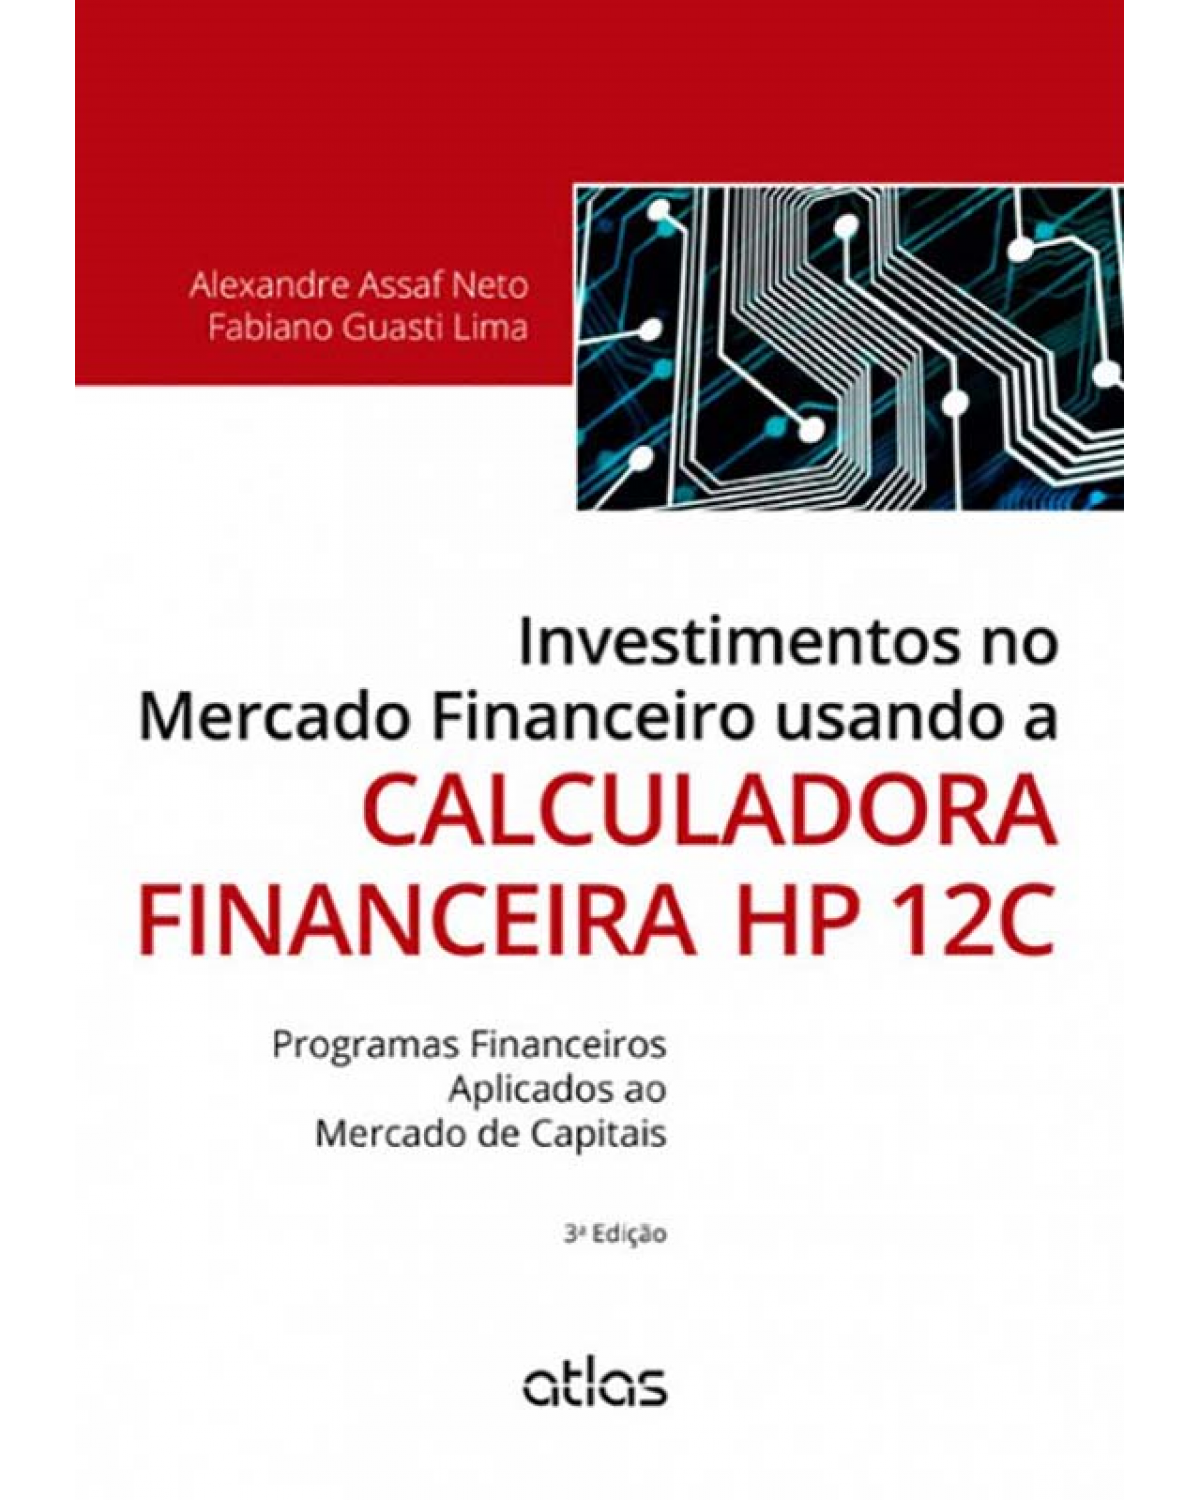 Investimentos no mercado financeiro usando a calculadora financeira HP 12C - 3ª Edição | 2013